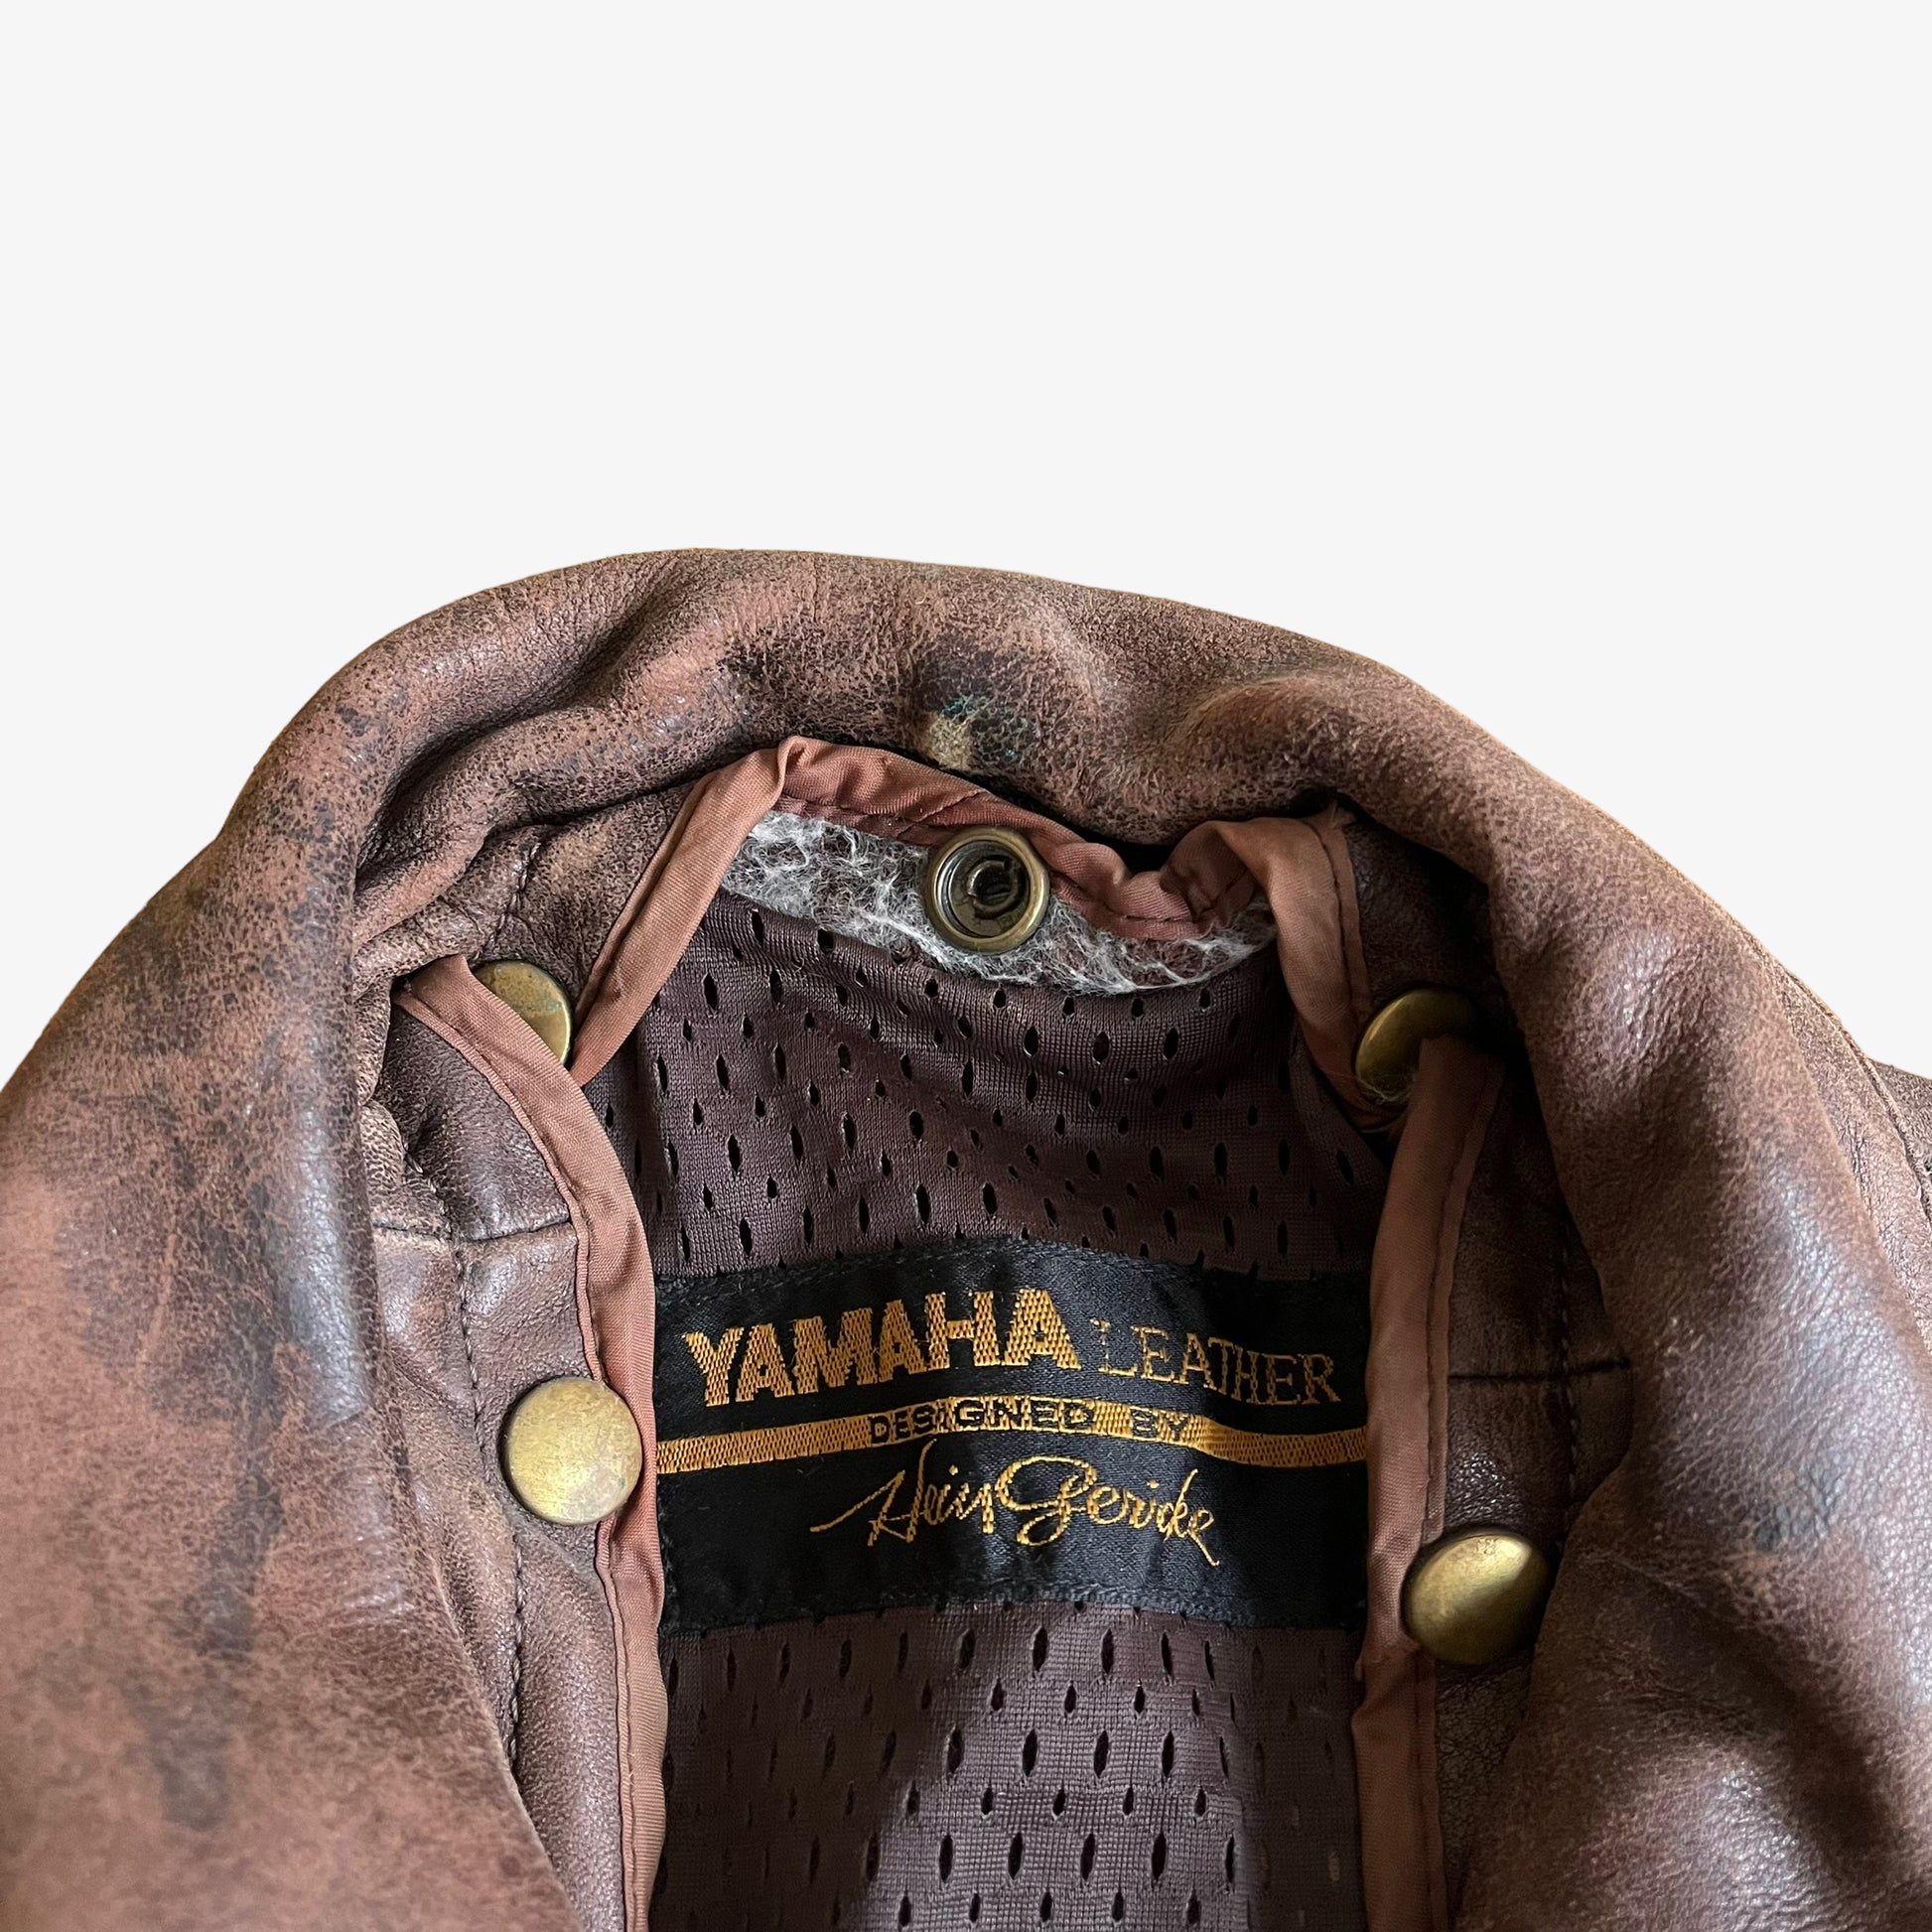 Vintage 80s Hein Gericke Yamaha Brown Leather Biker Jacket Label - Casspios Dream